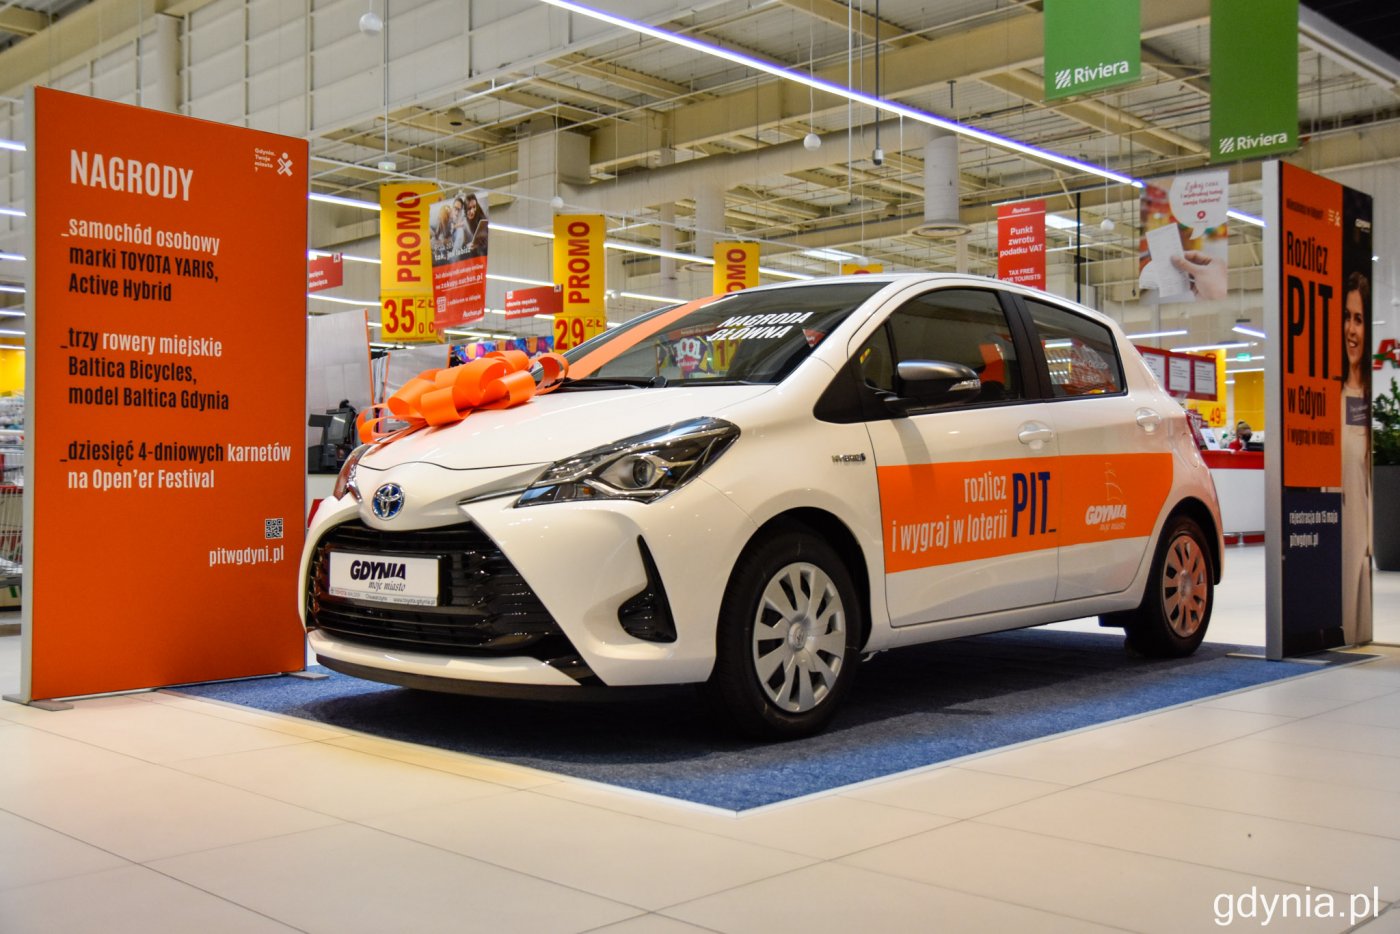 Hybrydowa Toyota Yaris jest główną nagrodą w loterii Rozlicz PIT w Gdyni. Auto można obejrzeć w Centrum Handlowym Riviera // fot. Paweł Kukla